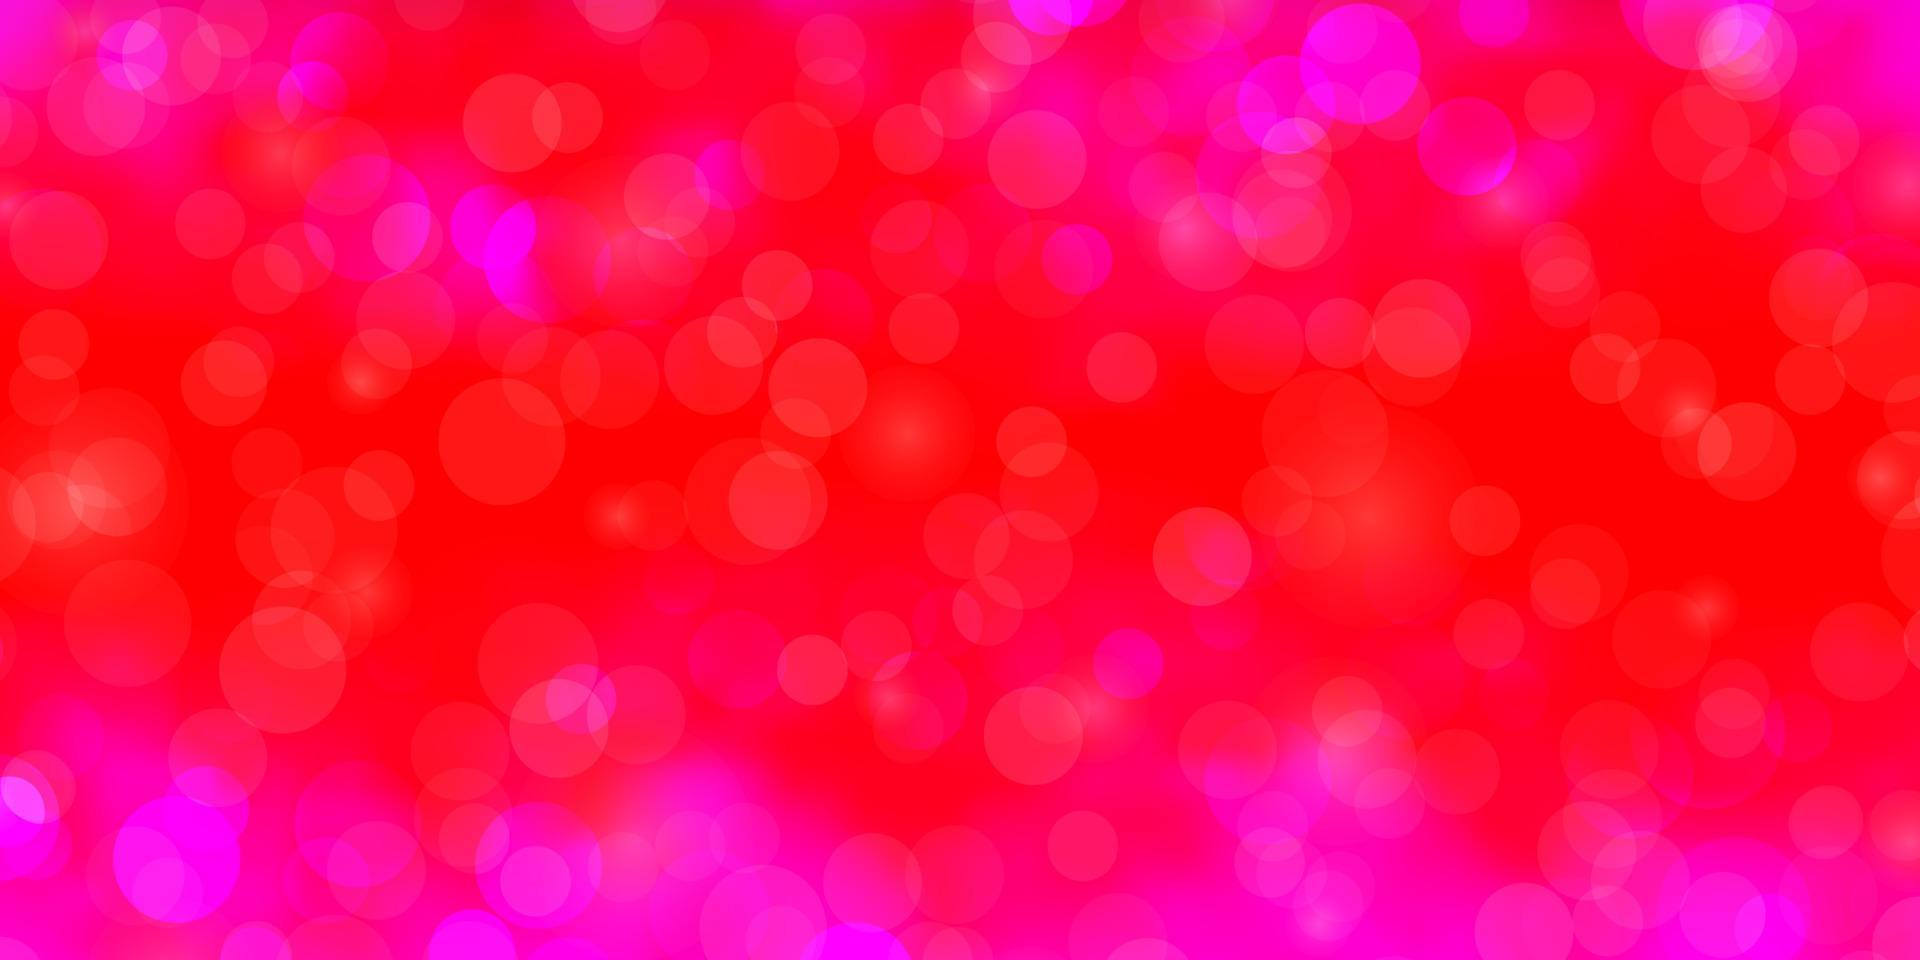 ljuslila, rosa vektorbakgrund med cirklar. vektor